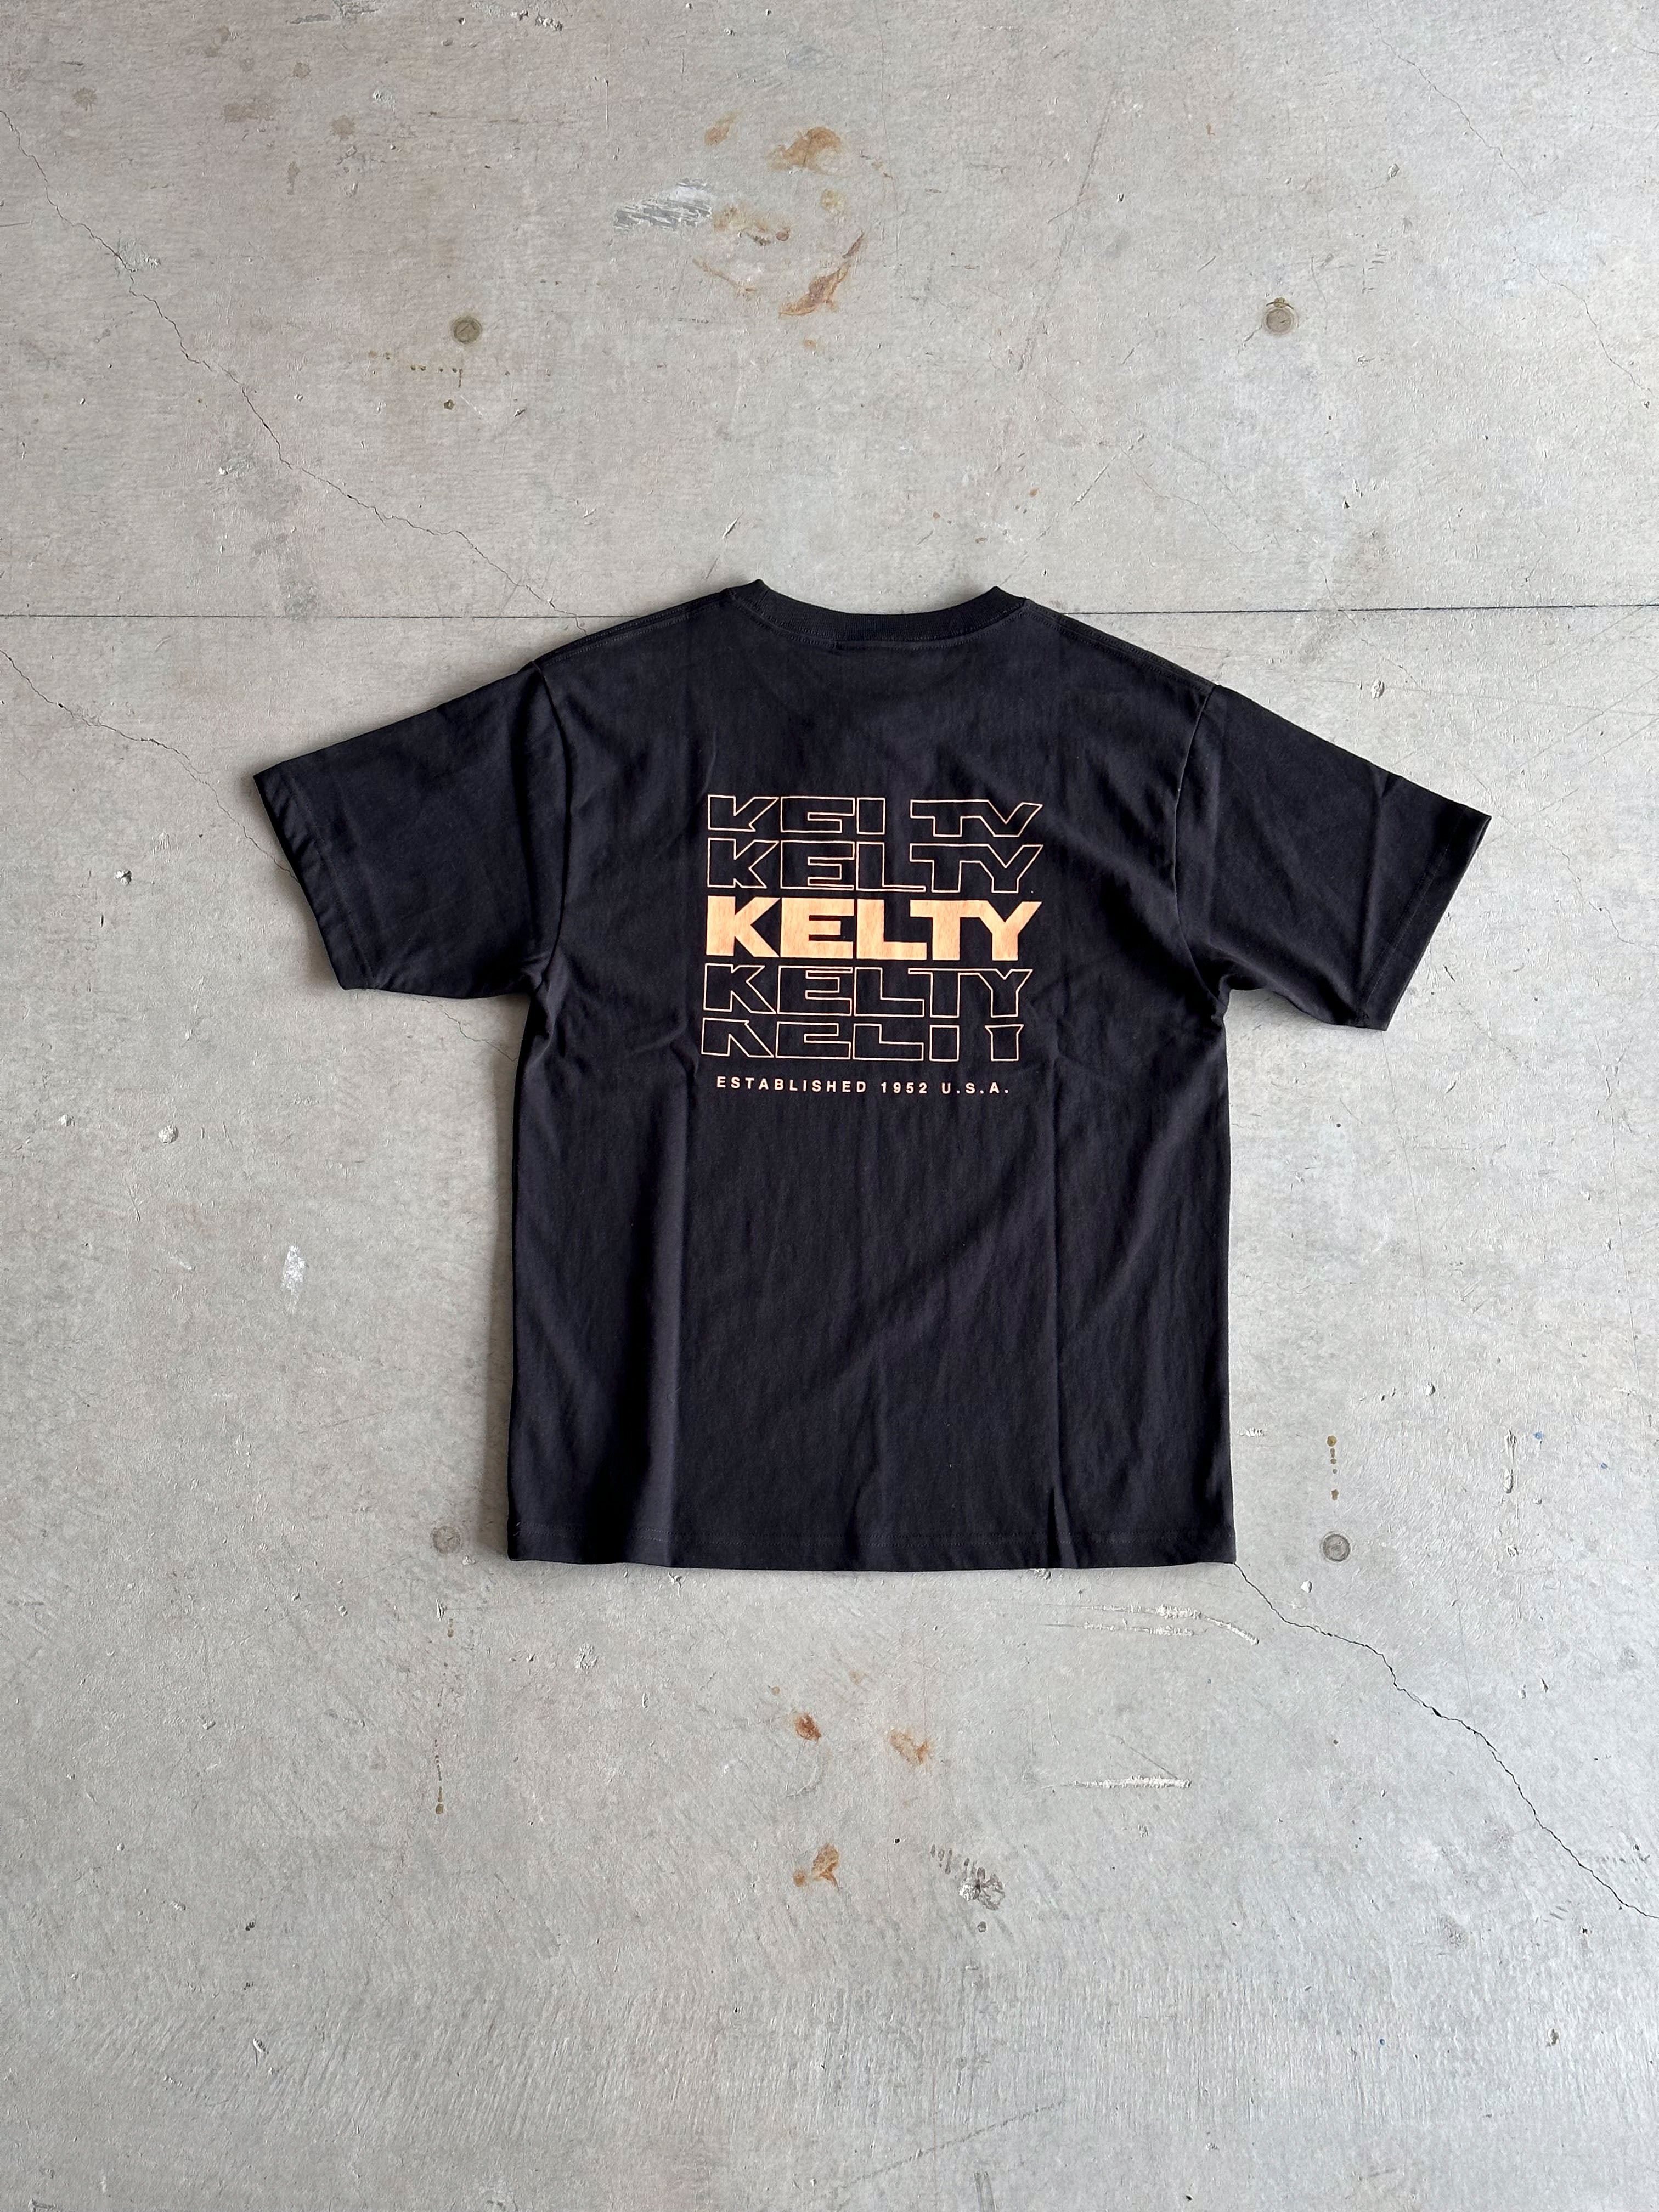 KELTY / バッグタイポロゴ S /S T シャツ